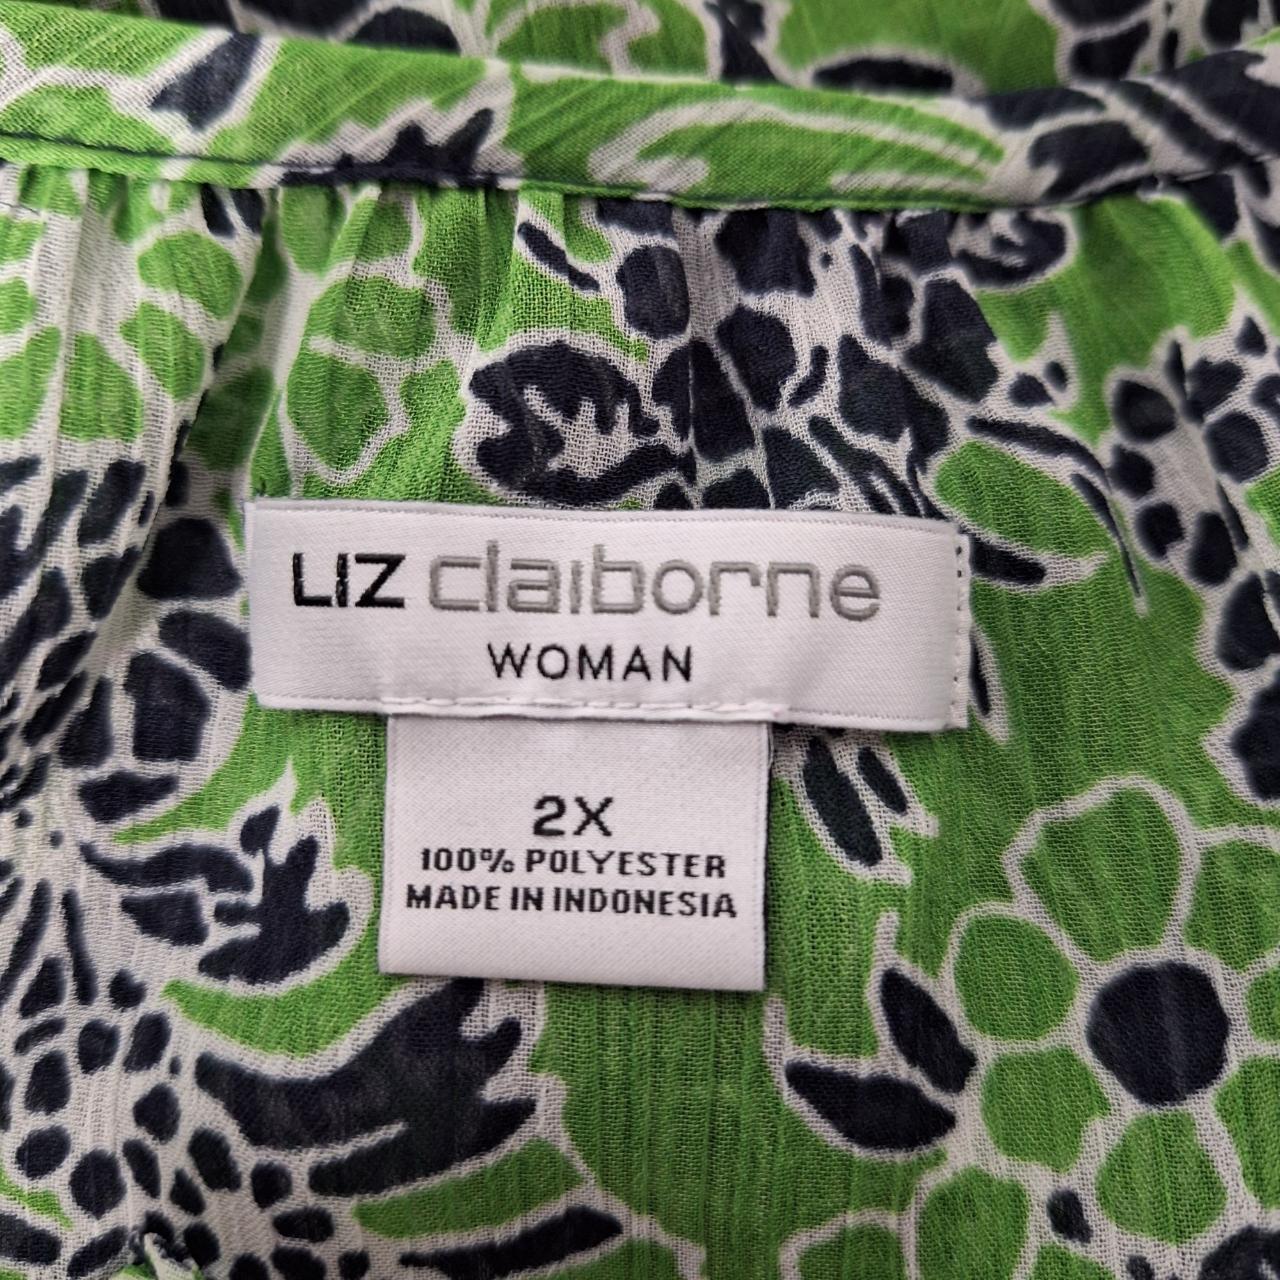 Liz Claiborne Blouse Tank Top Set Plus Size 2X Black... - Depop